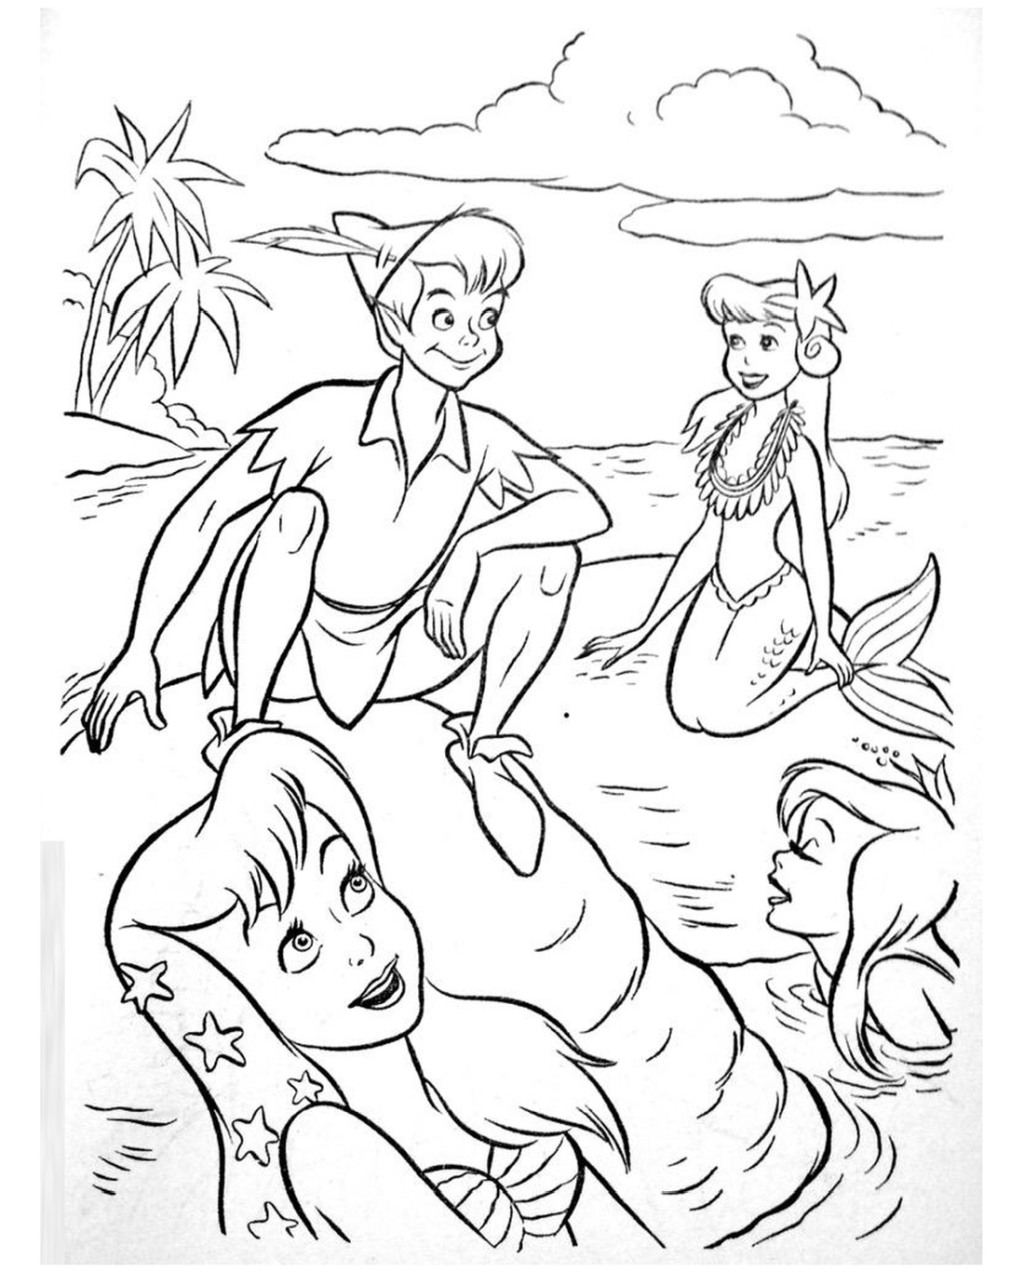 Peter Pan mermaid coloring pages